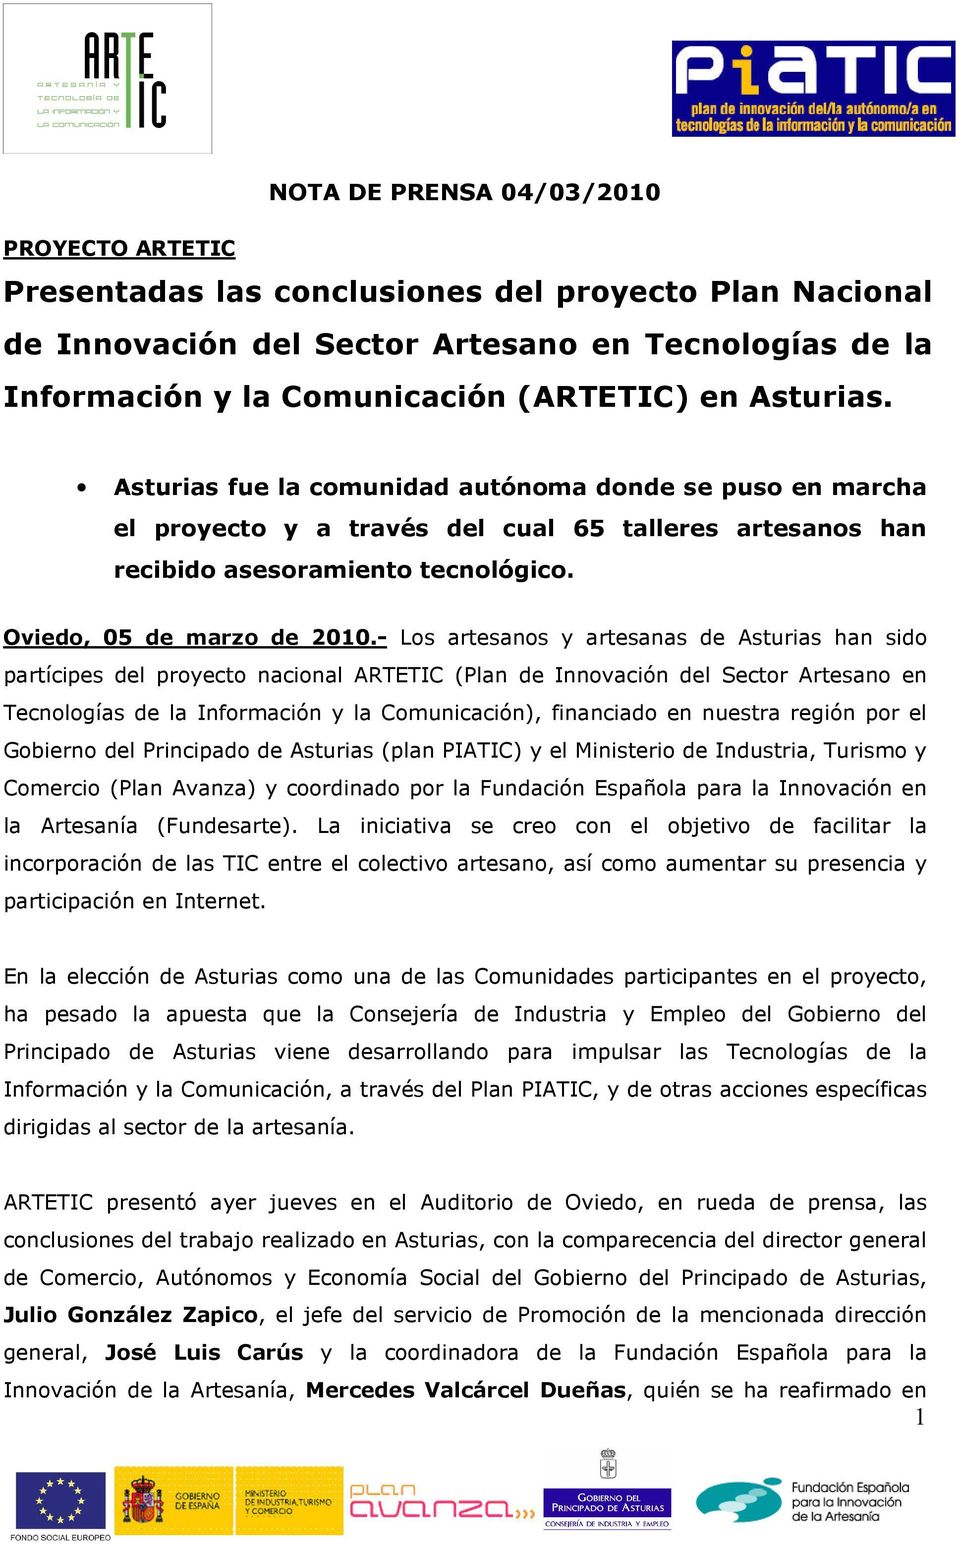 - Los artesanos y artesanas de Asturias han sido partícipes del proyecto nacional ARTETIC (Plan de Innovación del Sector Artesano en Tecnologías de la Información y la Comunicación), financiado en